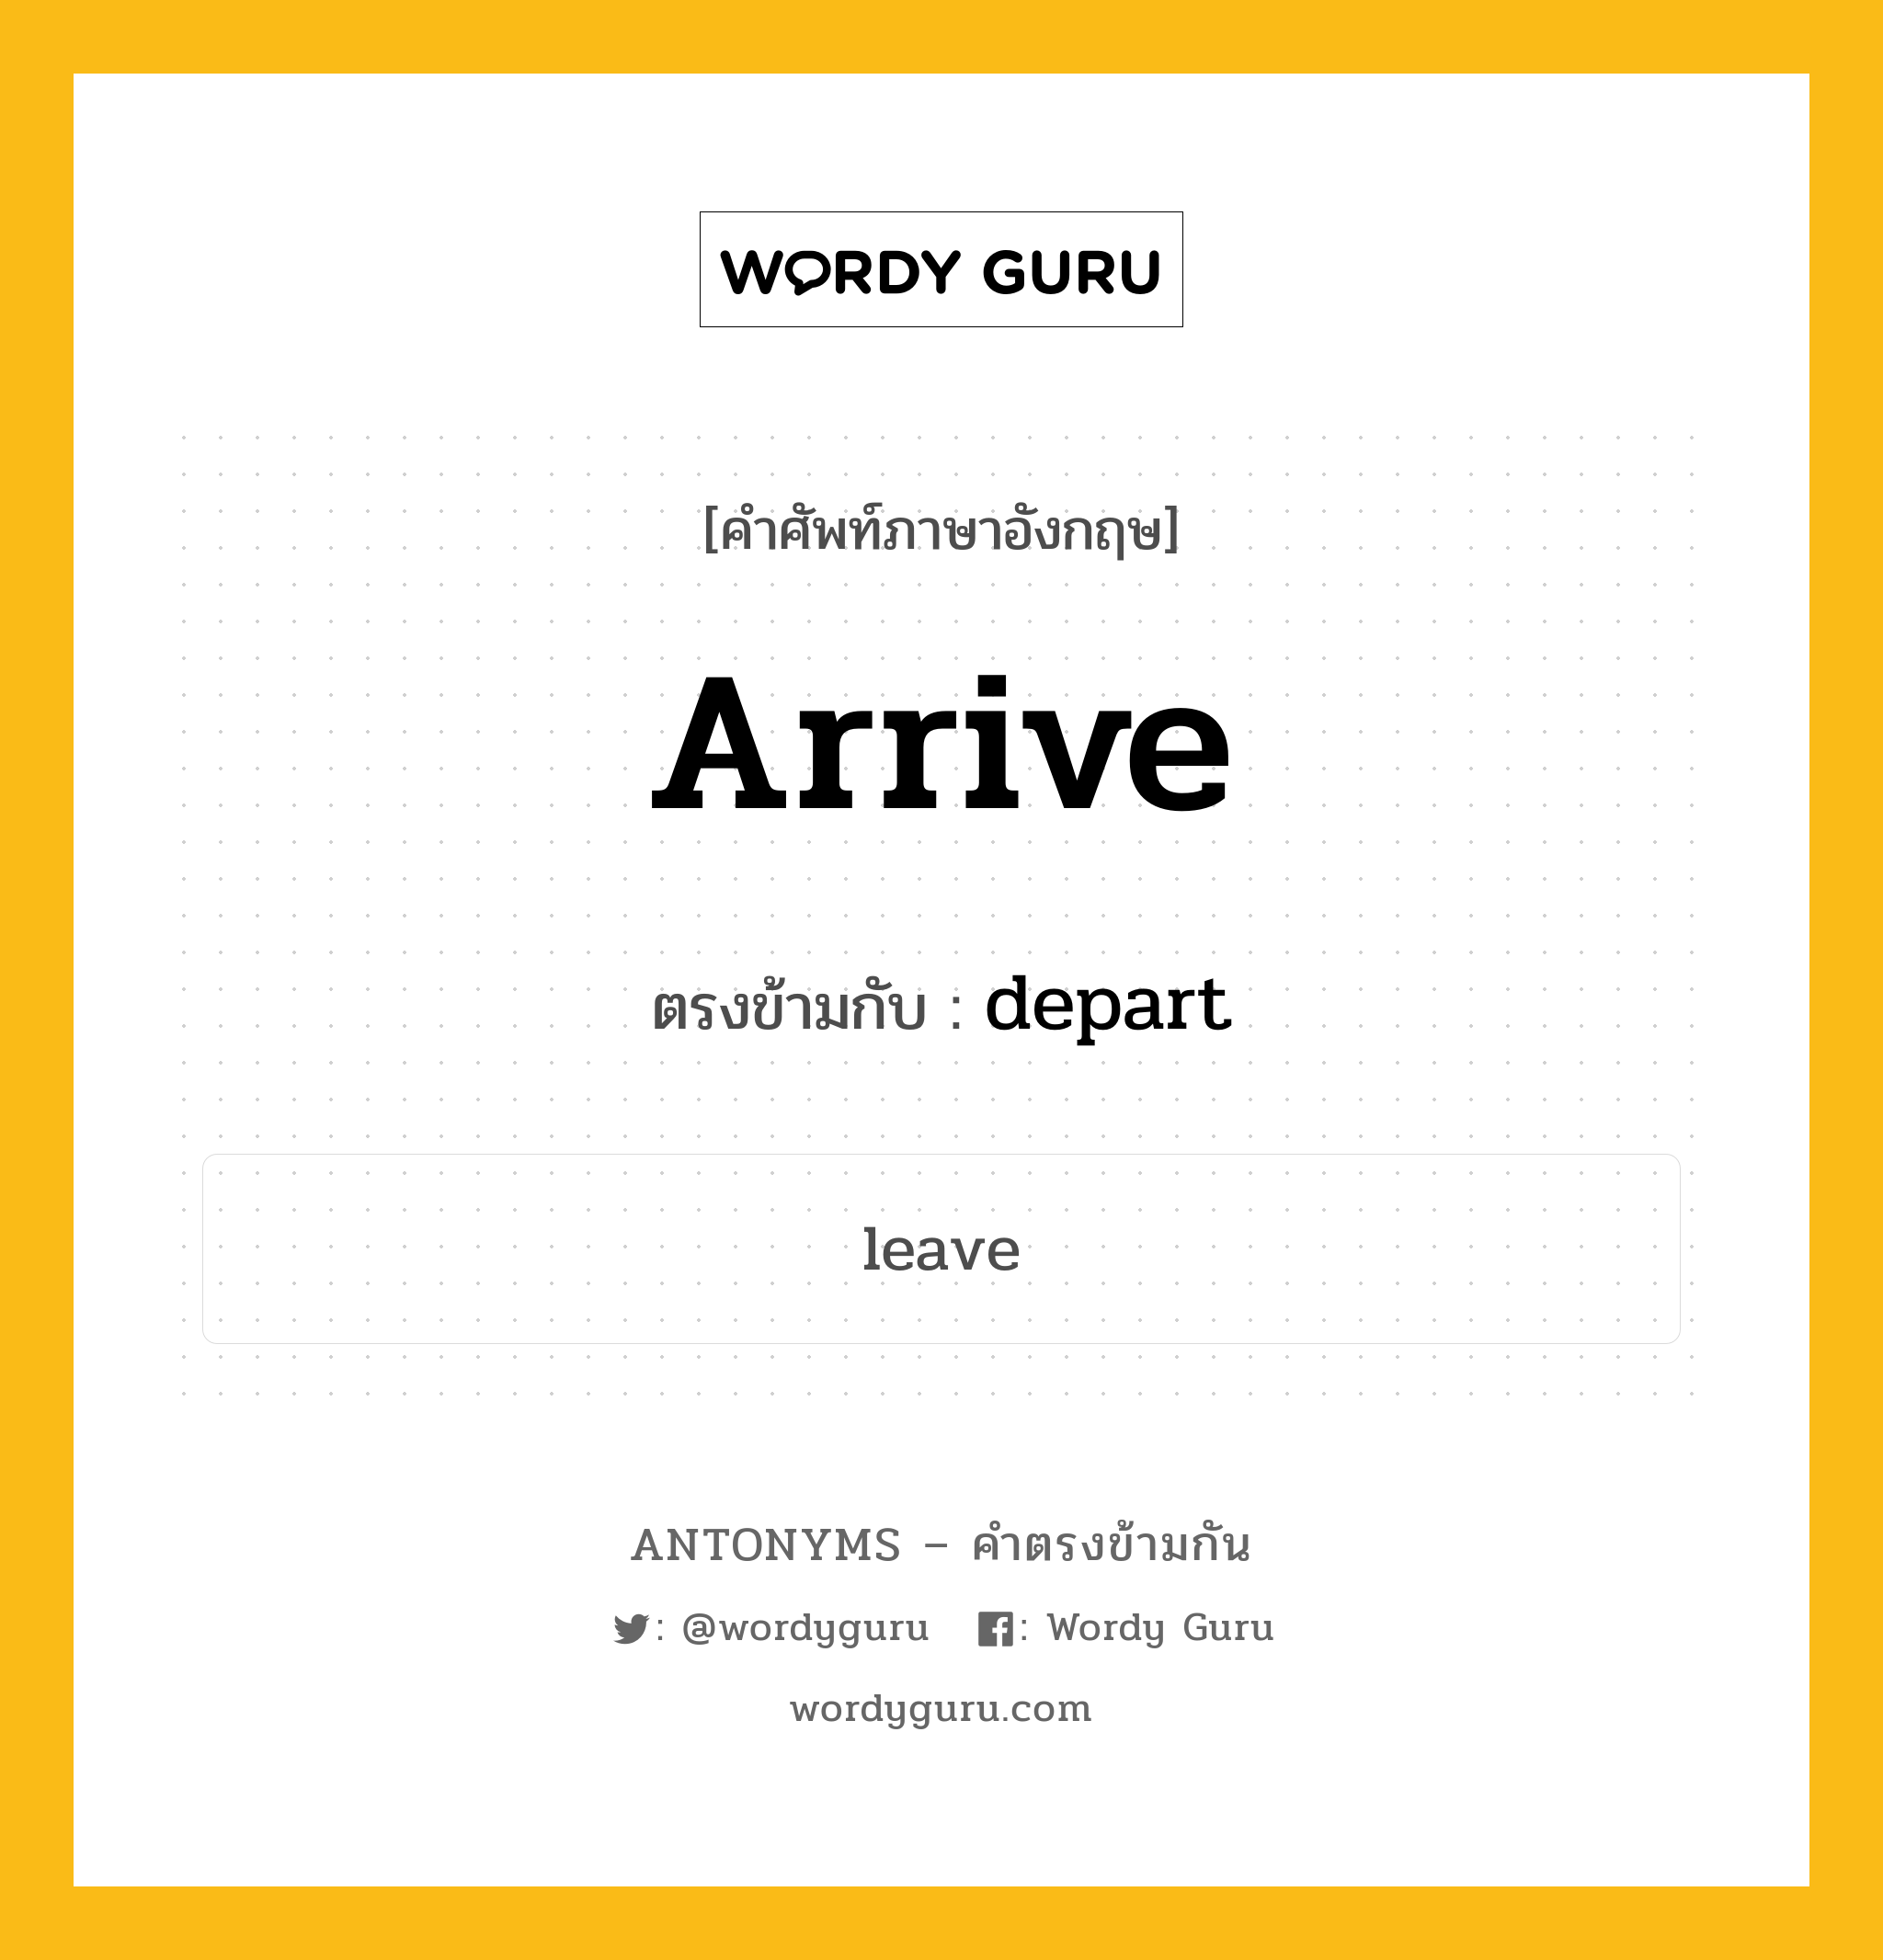 arrive เป็นคำตรงข้ามกับคำไหนบ้าง?, คำศัพท์ภาษาอังกฤษ arrive ตรงข้ามกับ depart หมวด depart